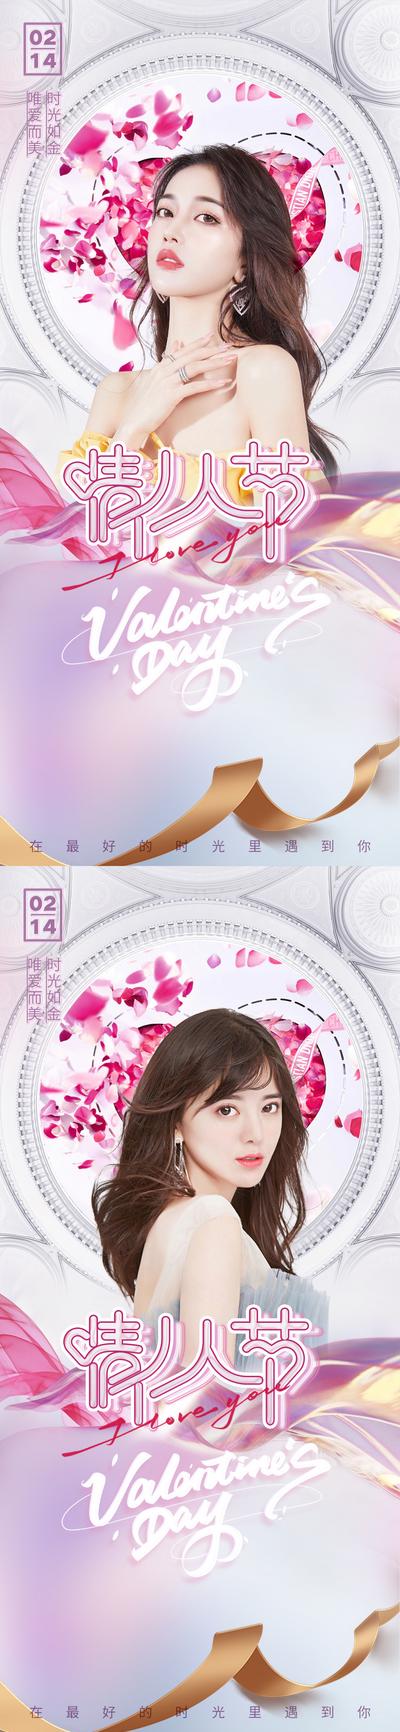 南门网 海报 公历节日 情人节 医美 整形 人物 花瓣 丝带 系列